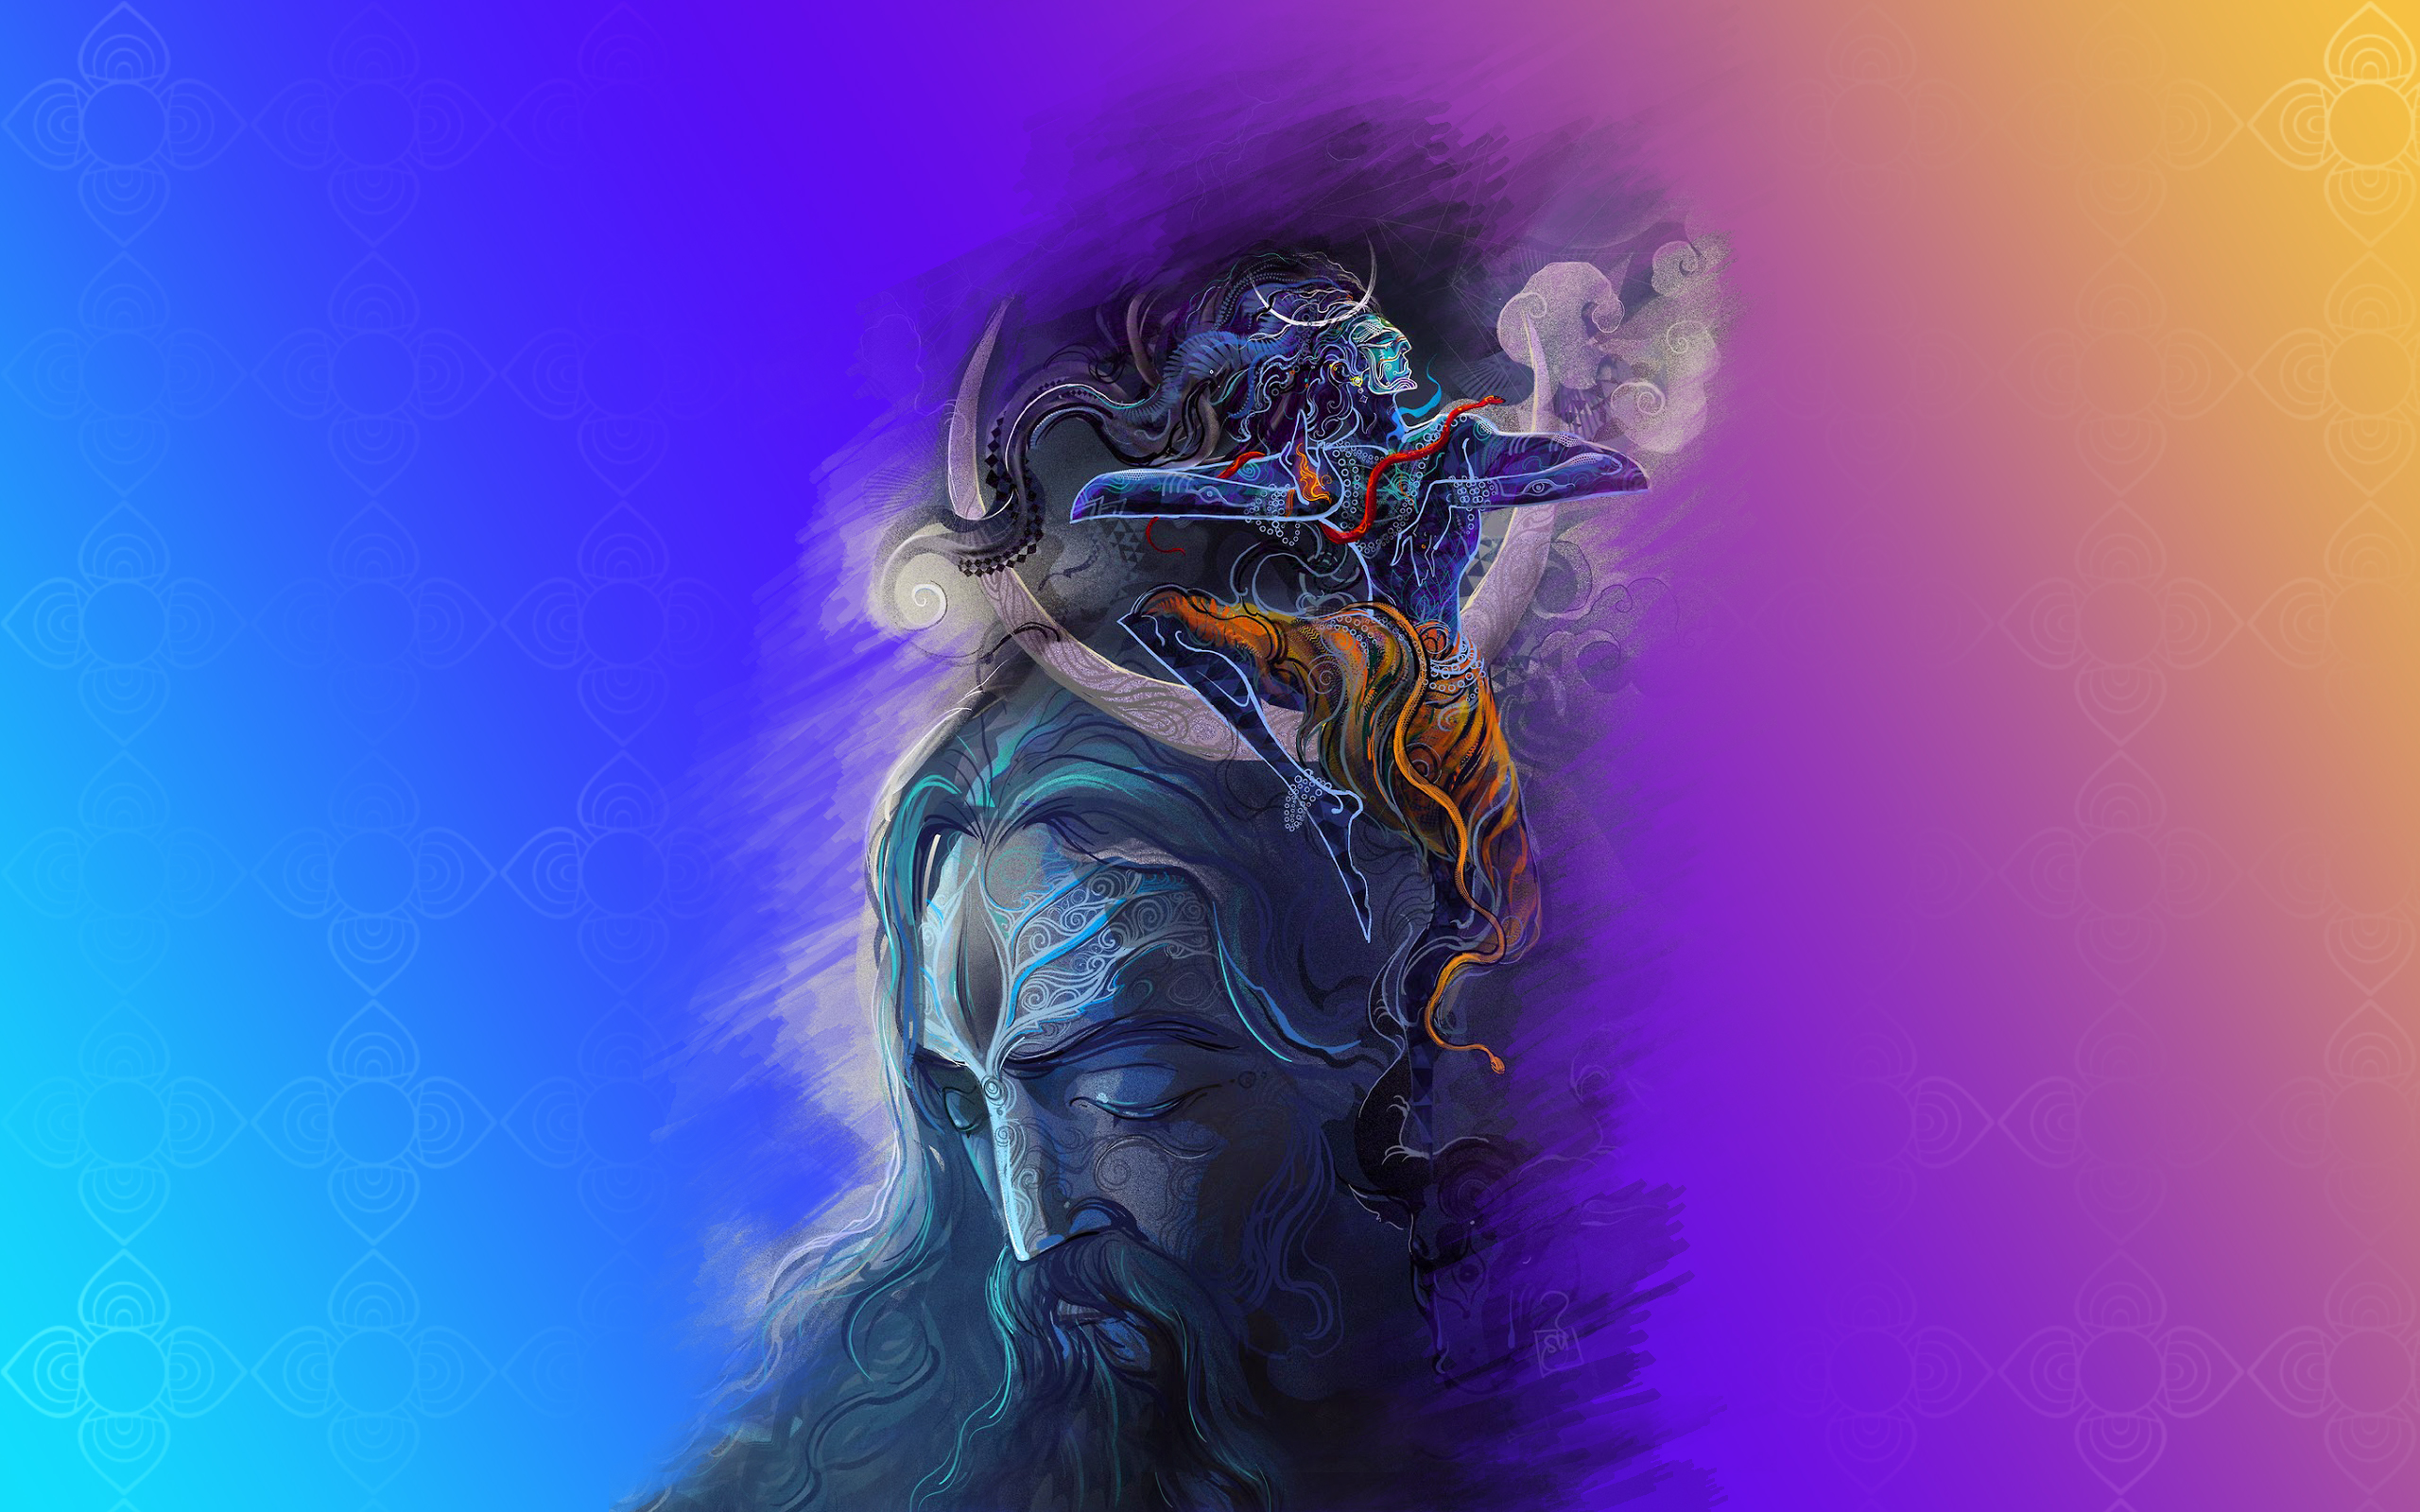 4k Wallpaper Shiva Wallpaper For Desktop Background